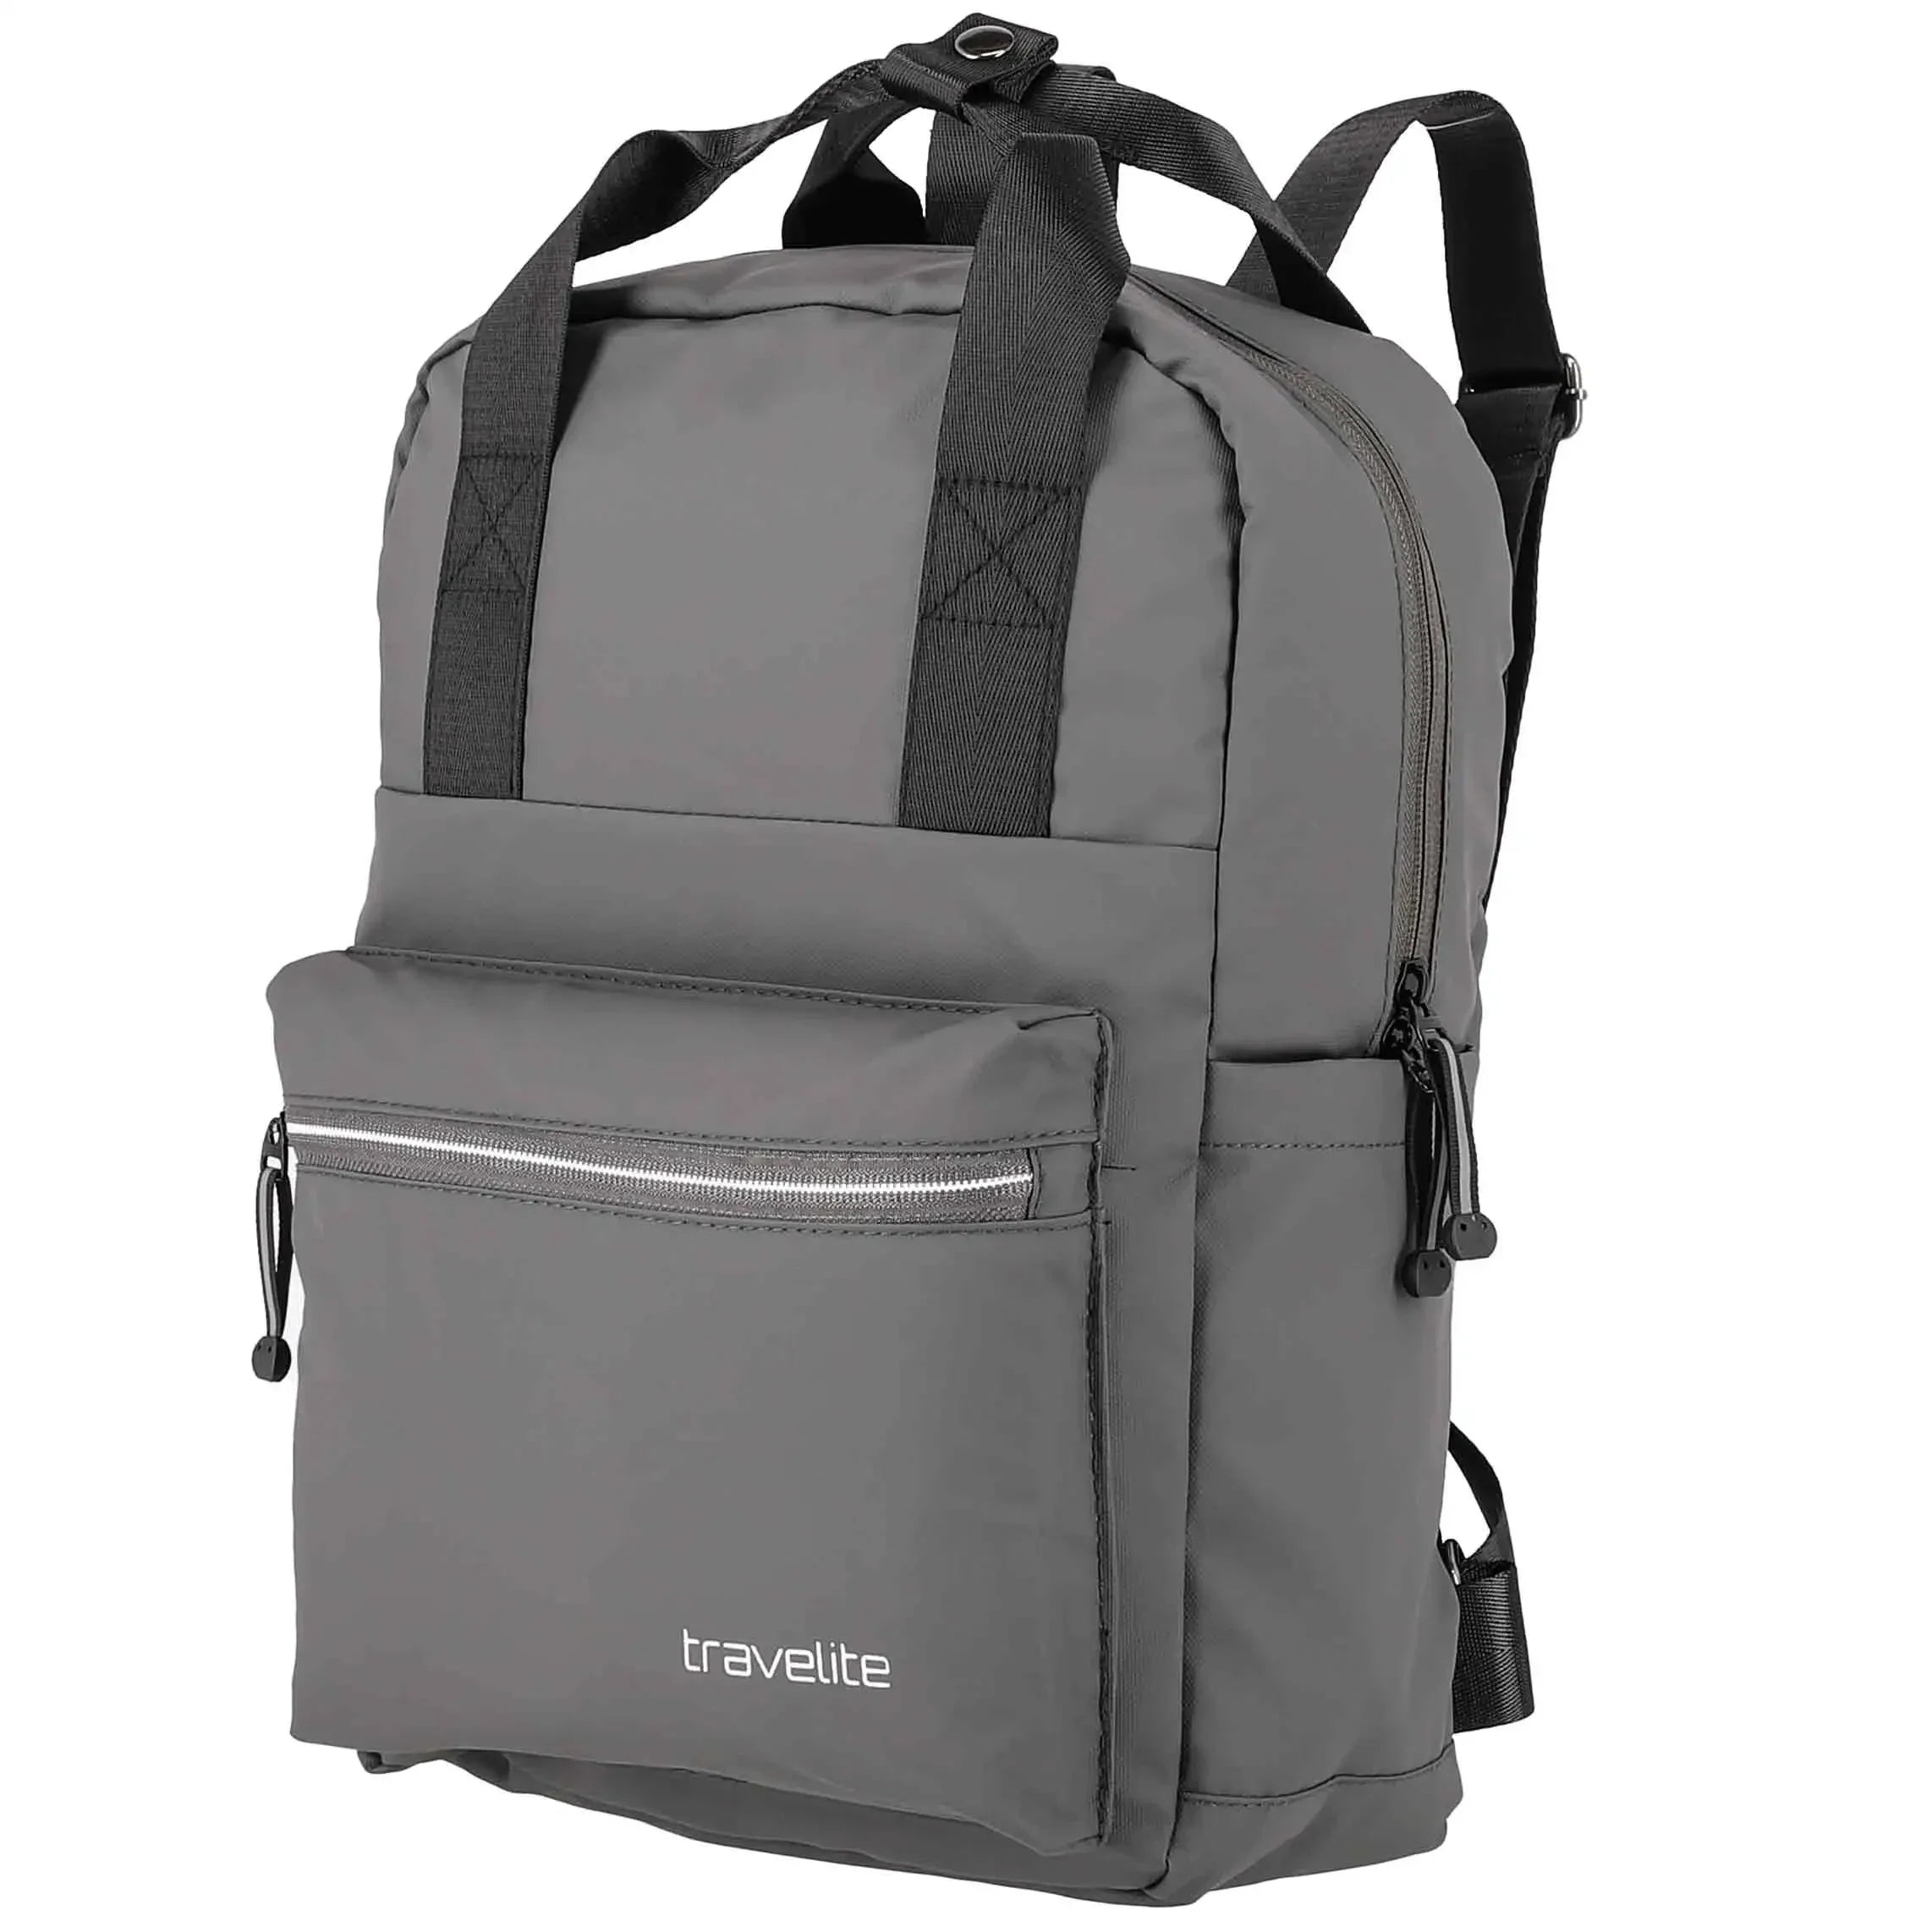 Travelite Basics sac à dos bâche 39 cm - noir